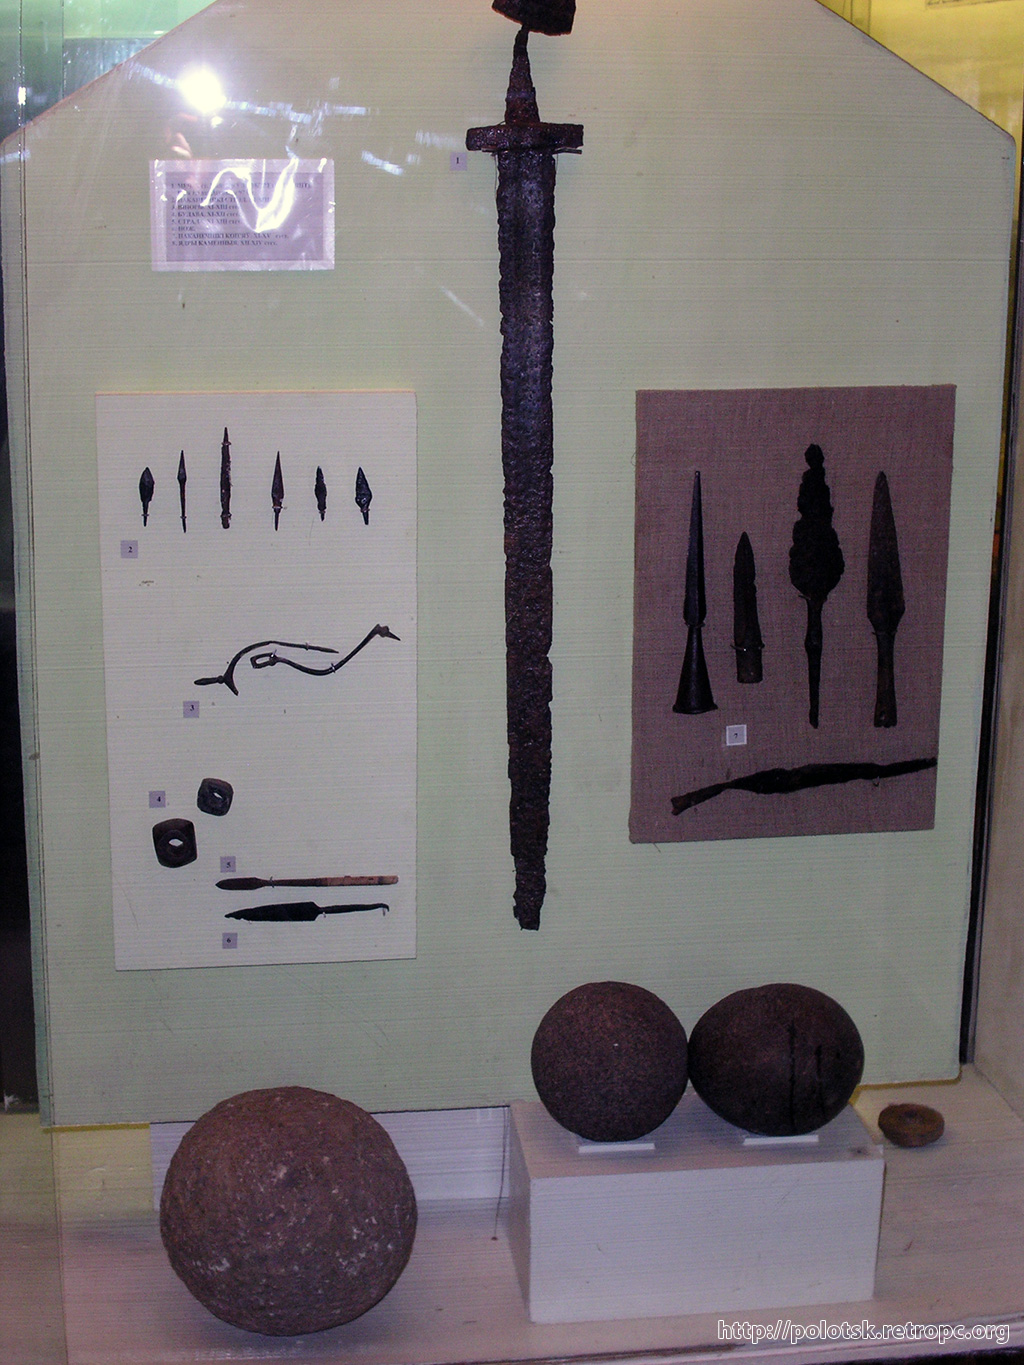 Ядра, мечи, наконечники стрел в Краеведческом музее города Полоцка